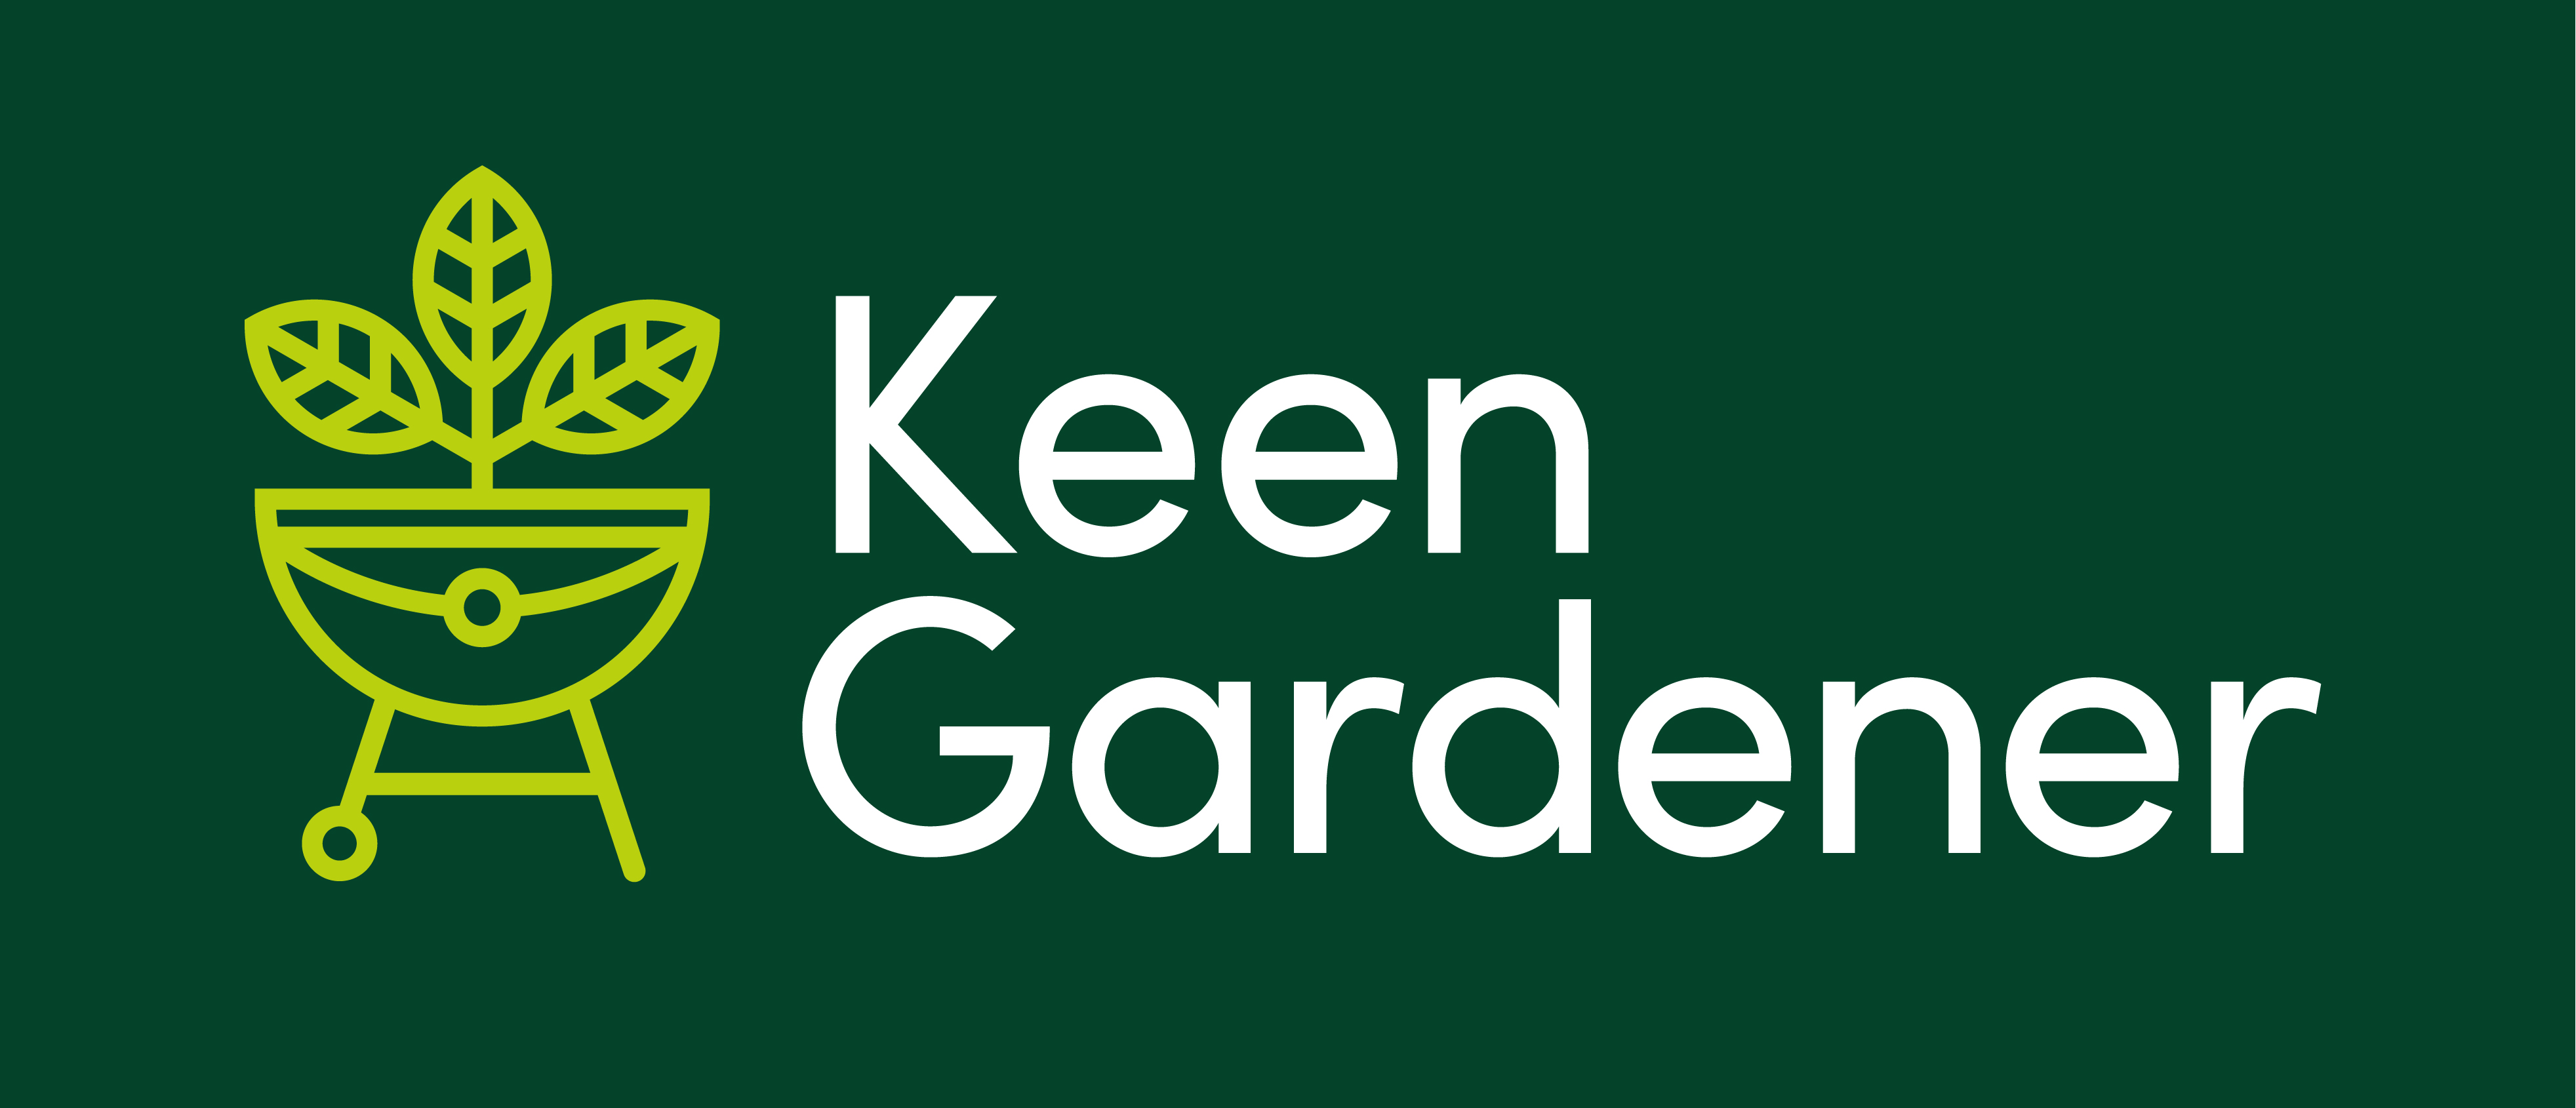 Forest Garden Beehive Compost Bin